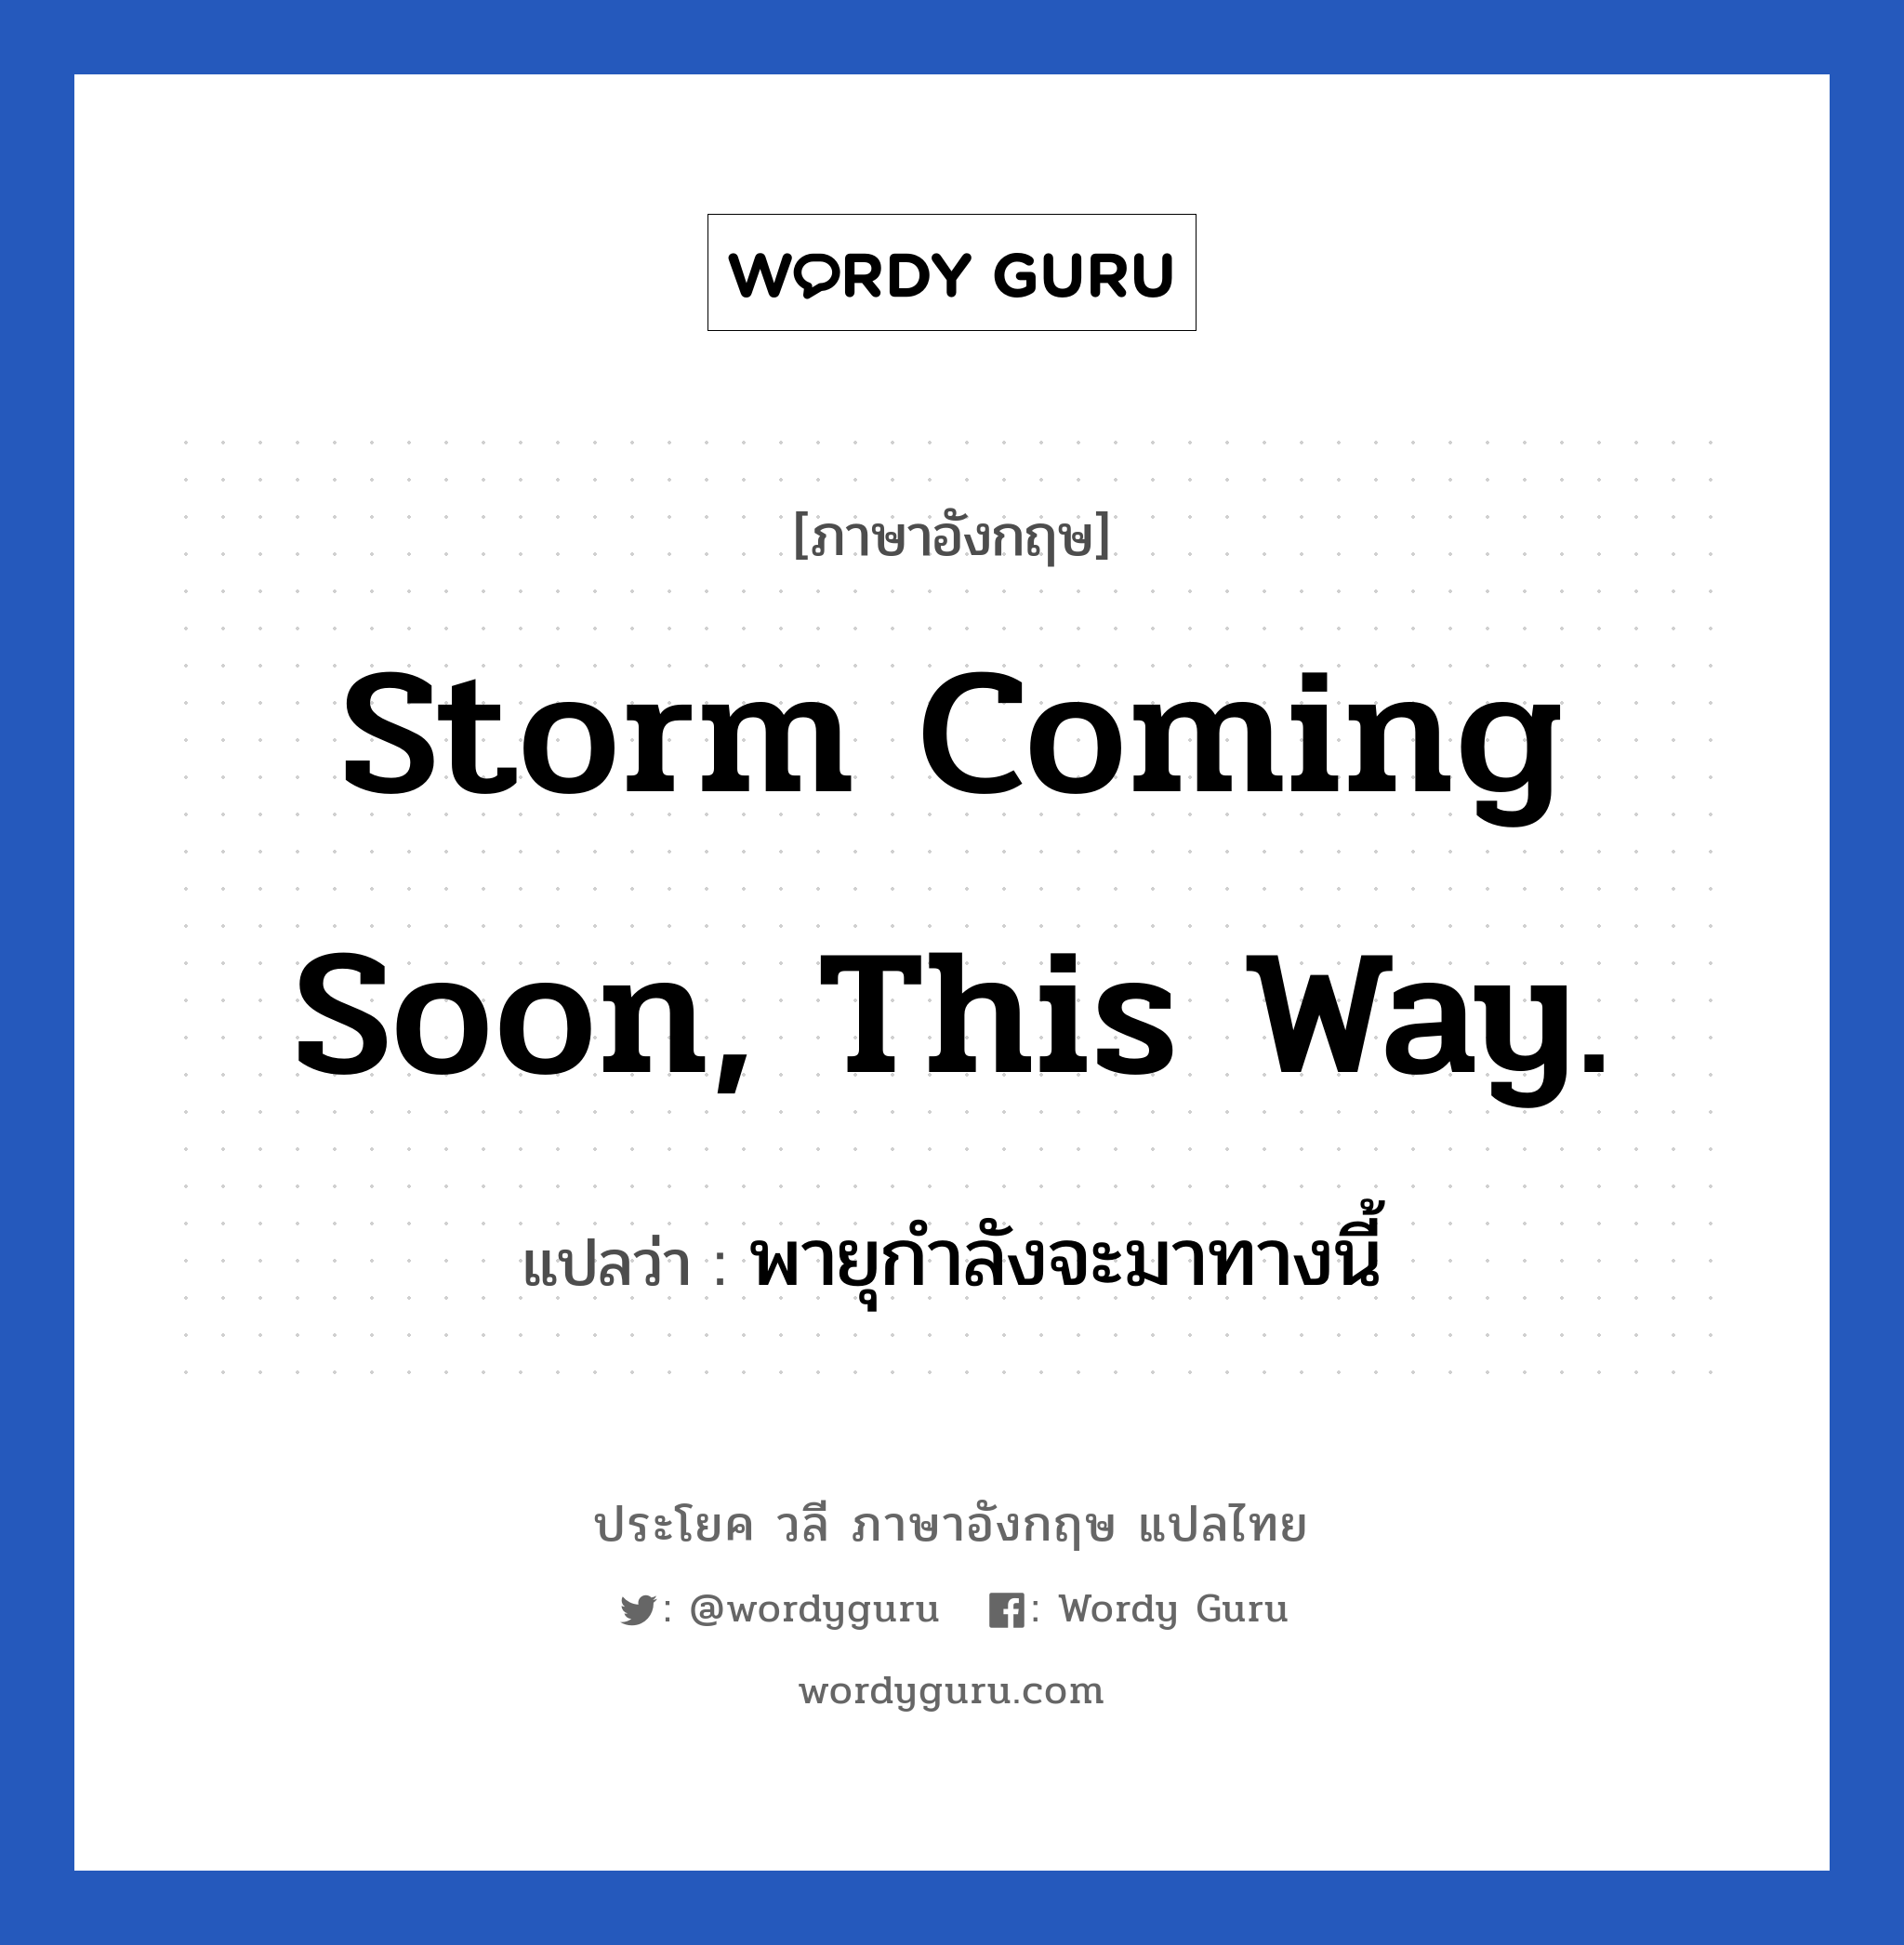 พายุกำลังจะมาทางนี้ ภาษาอังกฤษ?, วลีภาษาอังกฤษ พายุกำลังจะมาทางนี้ แปลว่า Storm coming soon, this way.